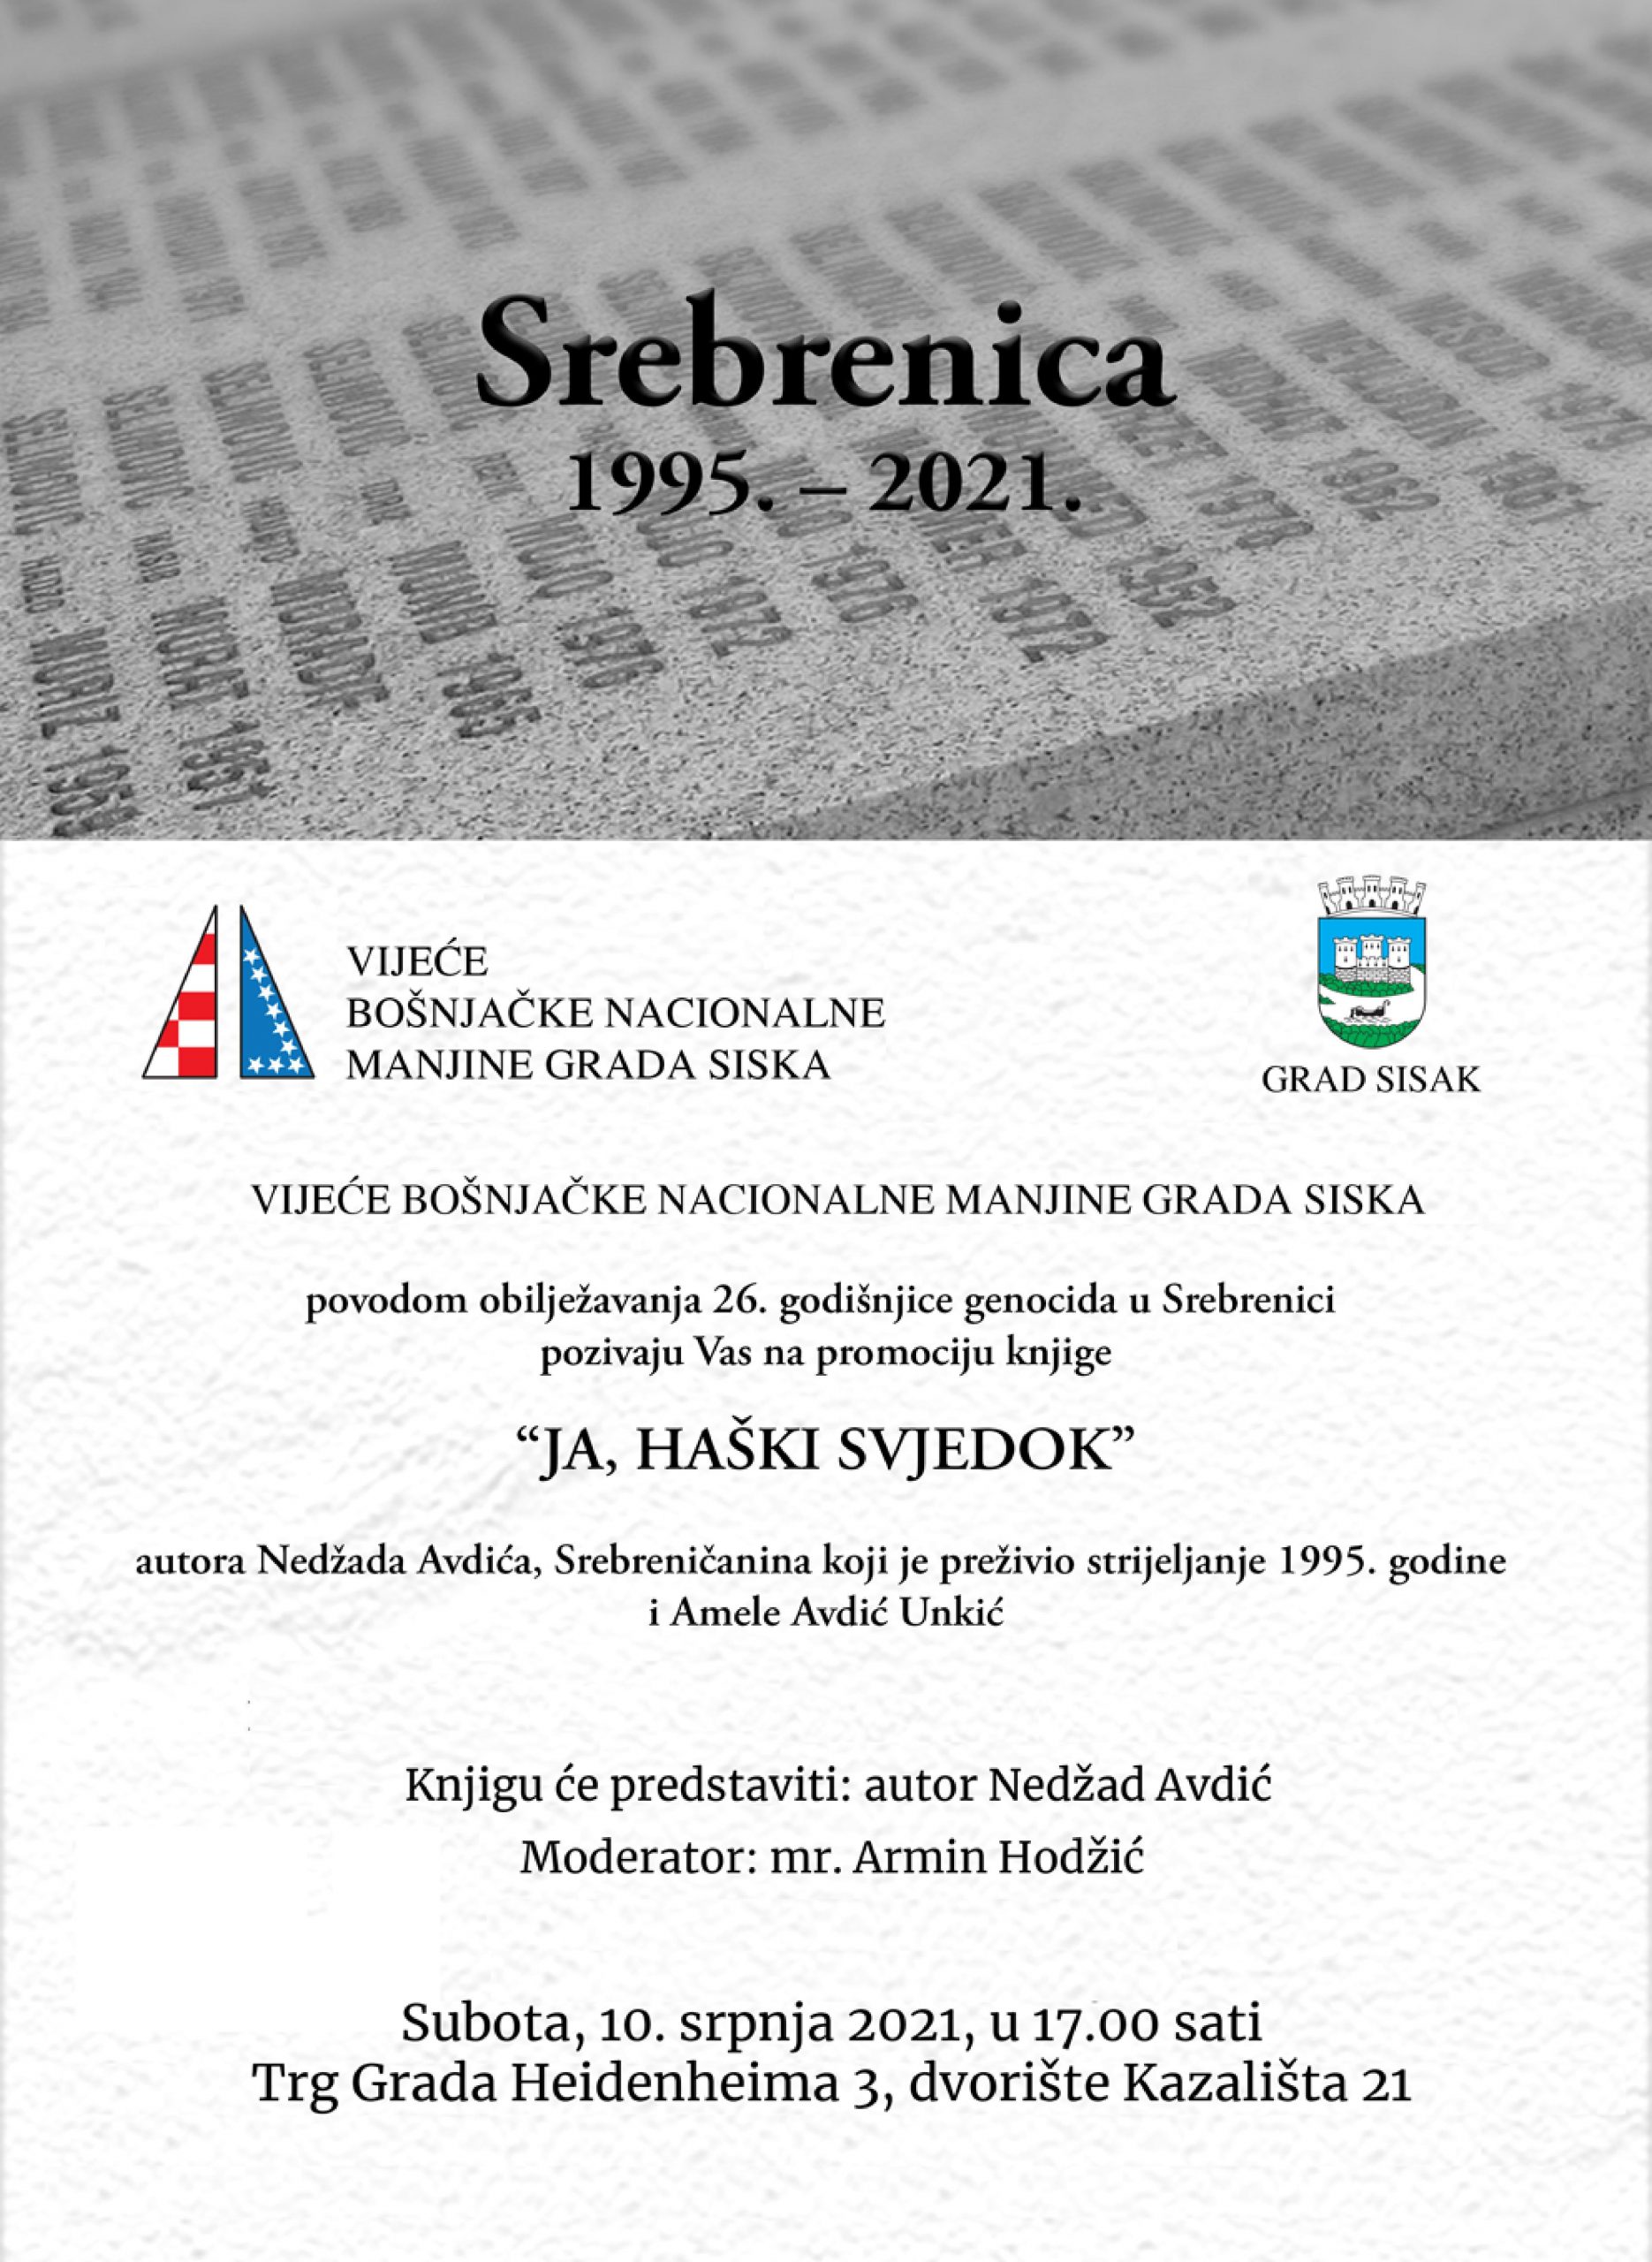 You are currently viewing Promocija knjige “Ja, haški svjedok” autora Nedžada Avdića